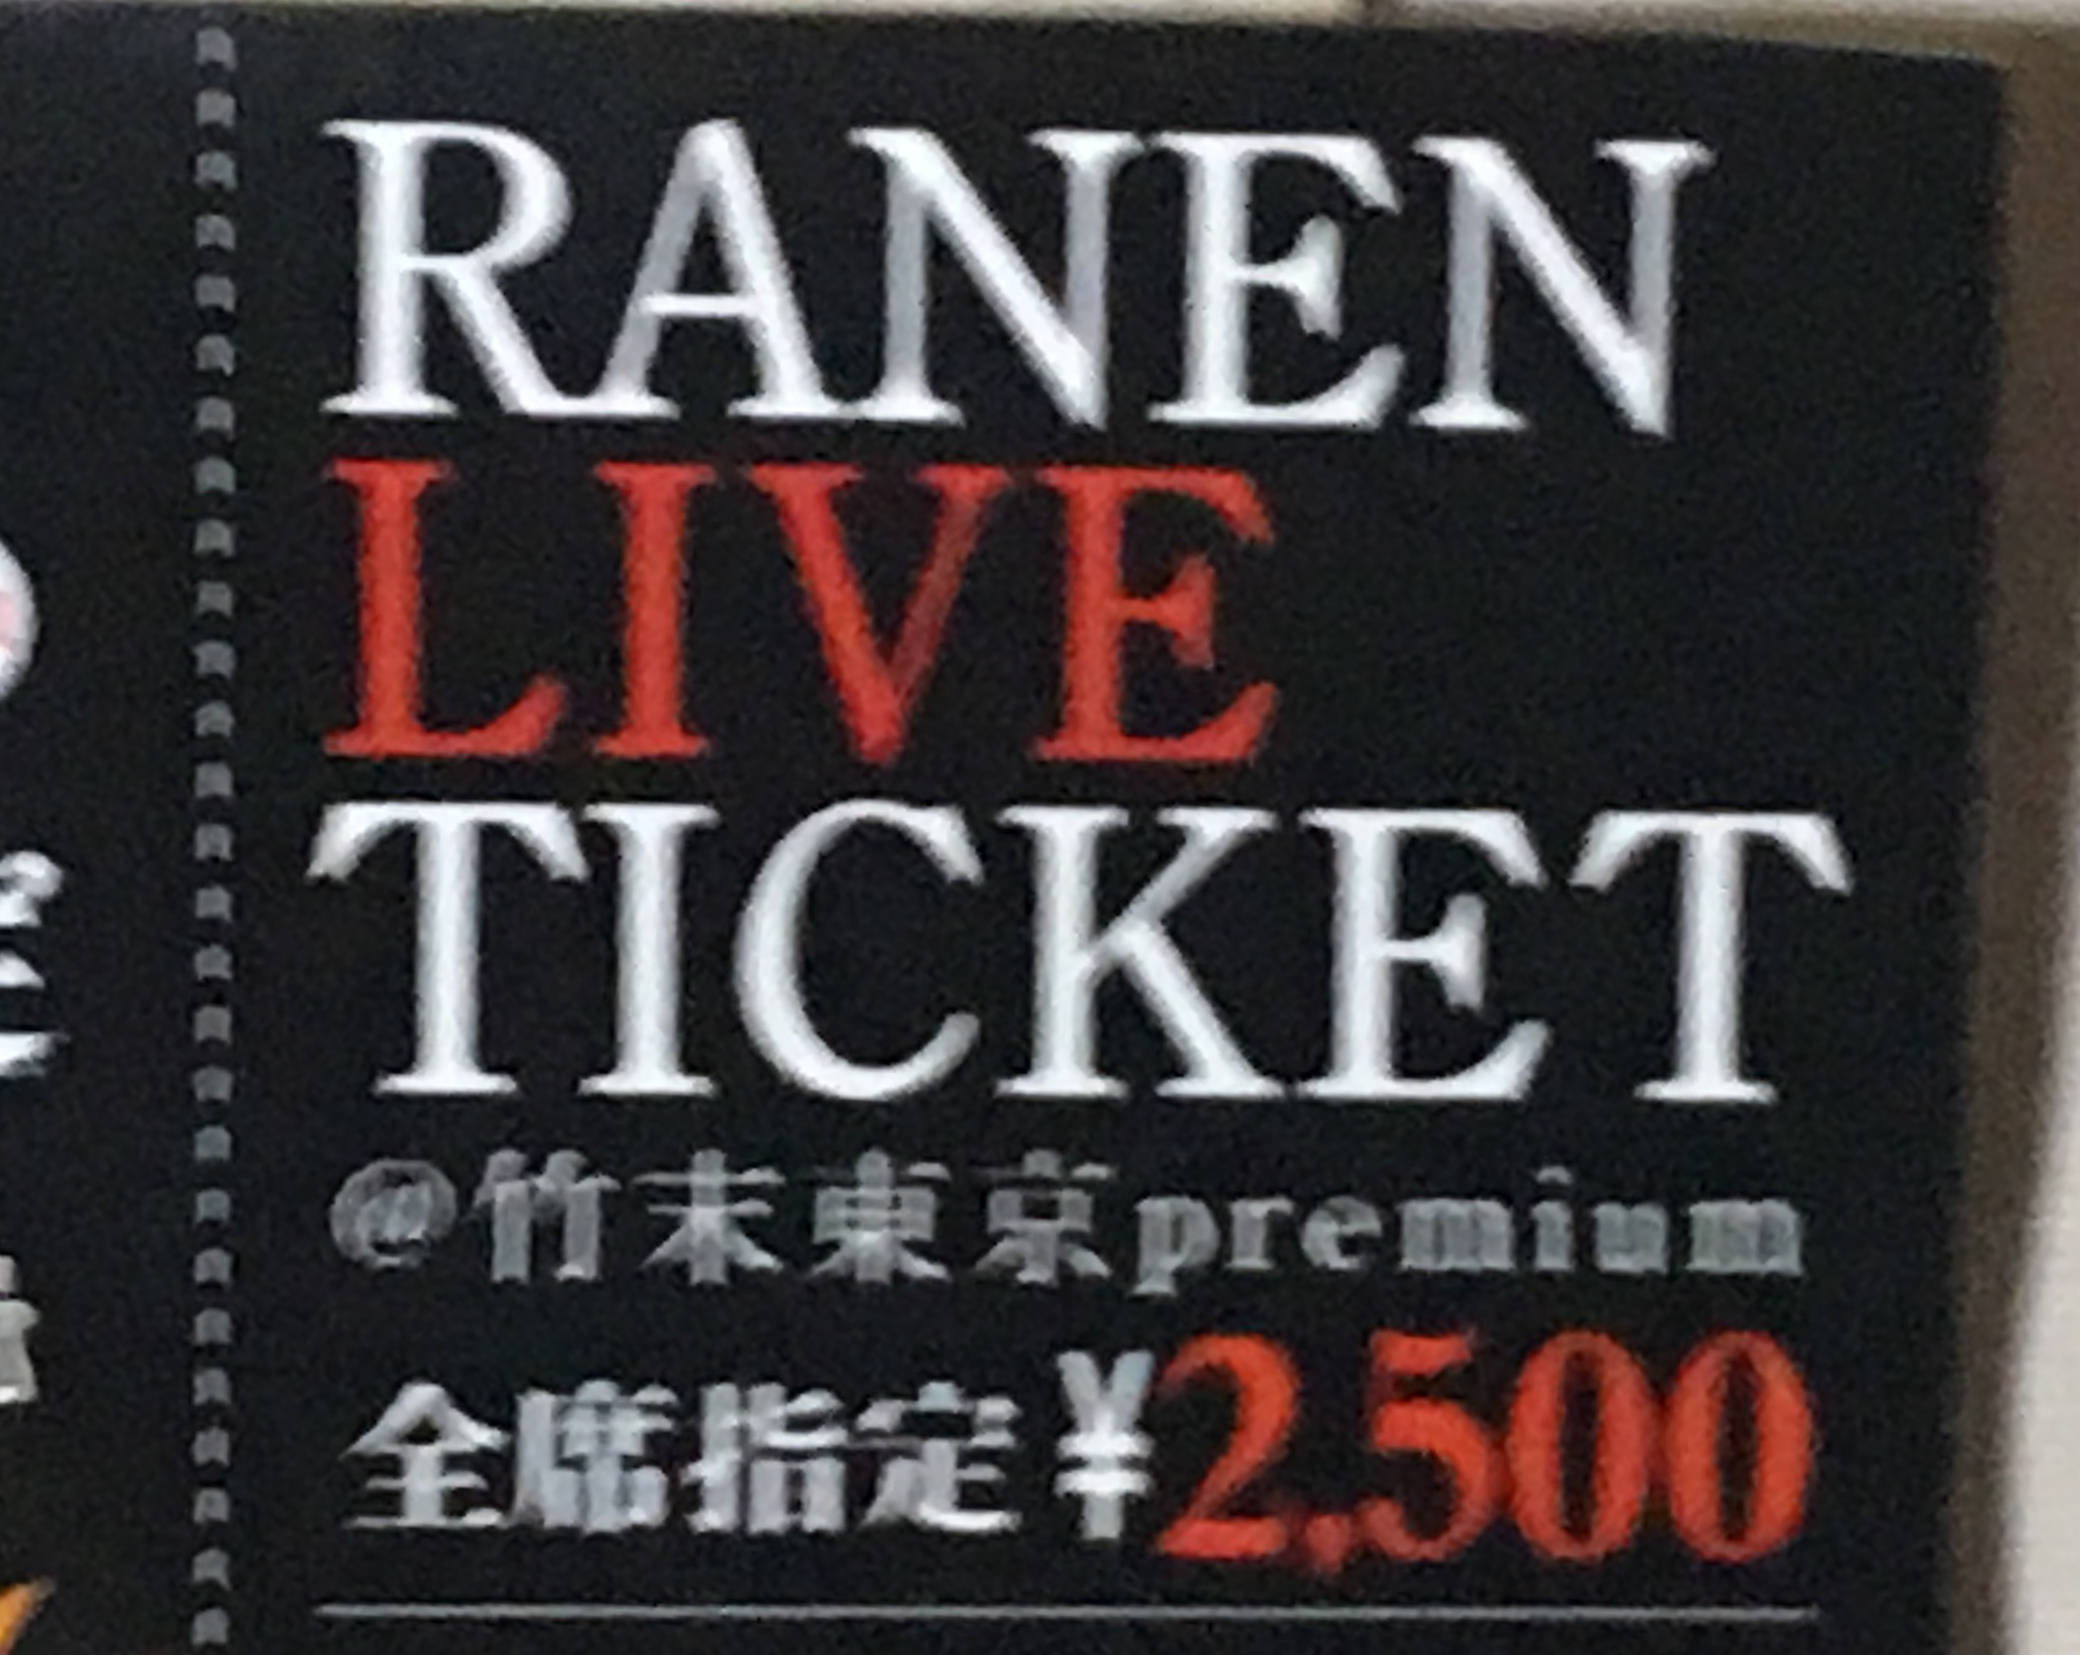 RANENという文字のミスが前回同様のチケット:竹末東京プレミアム イベント「怪物祭」